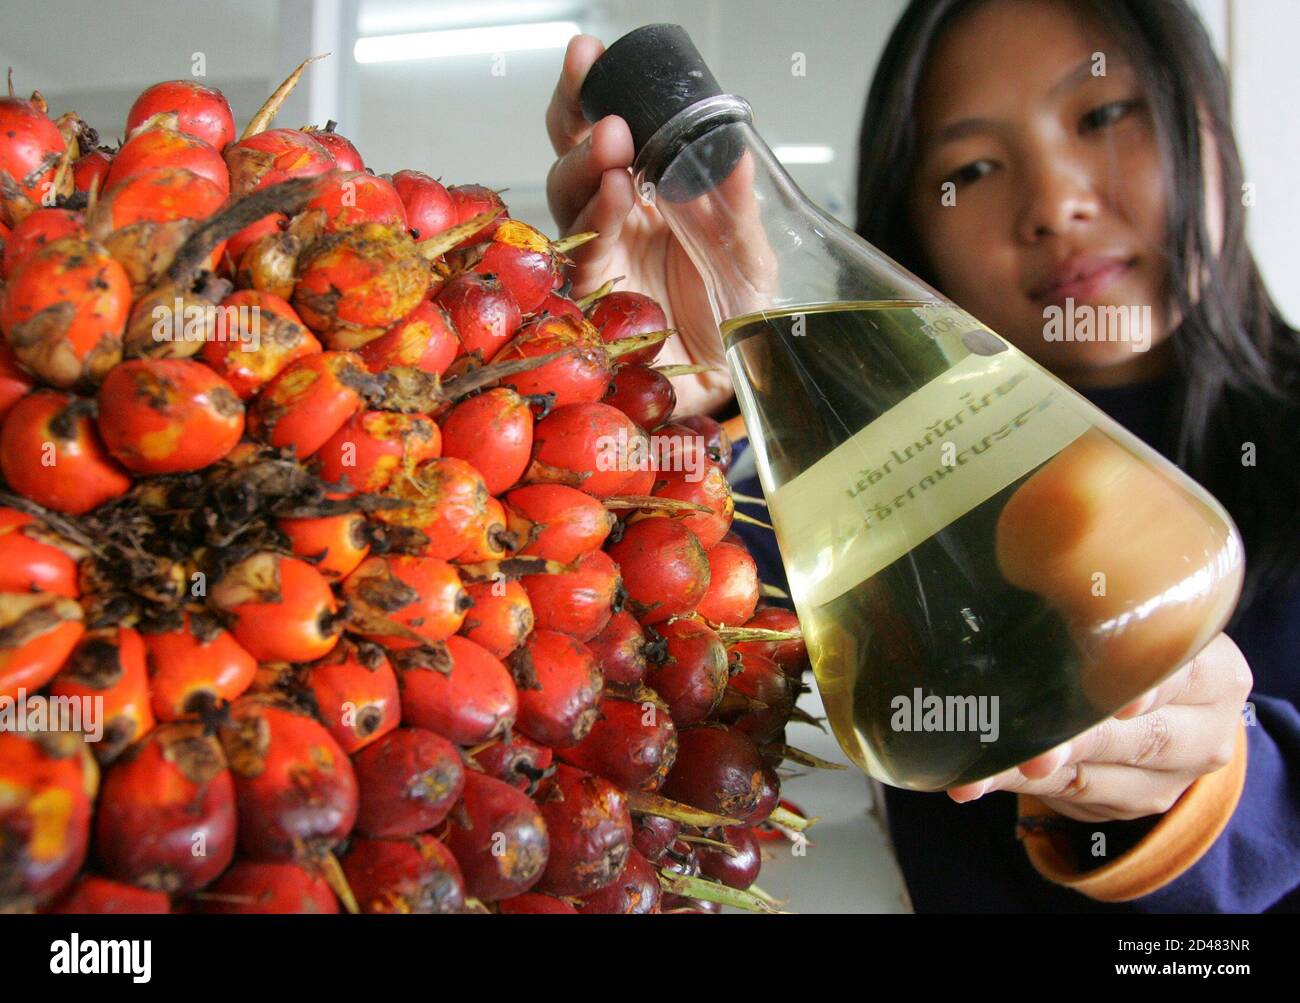 Palmöl-Raffinerie Arbeitnehmer zeigt eine Flasche von Palmöl in der östlichen Provinz Chonburi, 110 Meilen (69) von Bangkok, 3. September 2004. NET-Öl Importeur Thailand will seine Palm-Produktion durch das Sechsfache erhöhen bis 2008 sein Öl verwenden, mischen mit Diesel, seine Rechnungen Import fossiler Brennstoffe zu reduzieren und die Einkommen der Landwirte zu steigern, sagte der Energieminister am Mittwoch, 17. November 2004. Bild 3. September 2004. REUTERS/Sukree Sukplang SS/CN Stockfoto